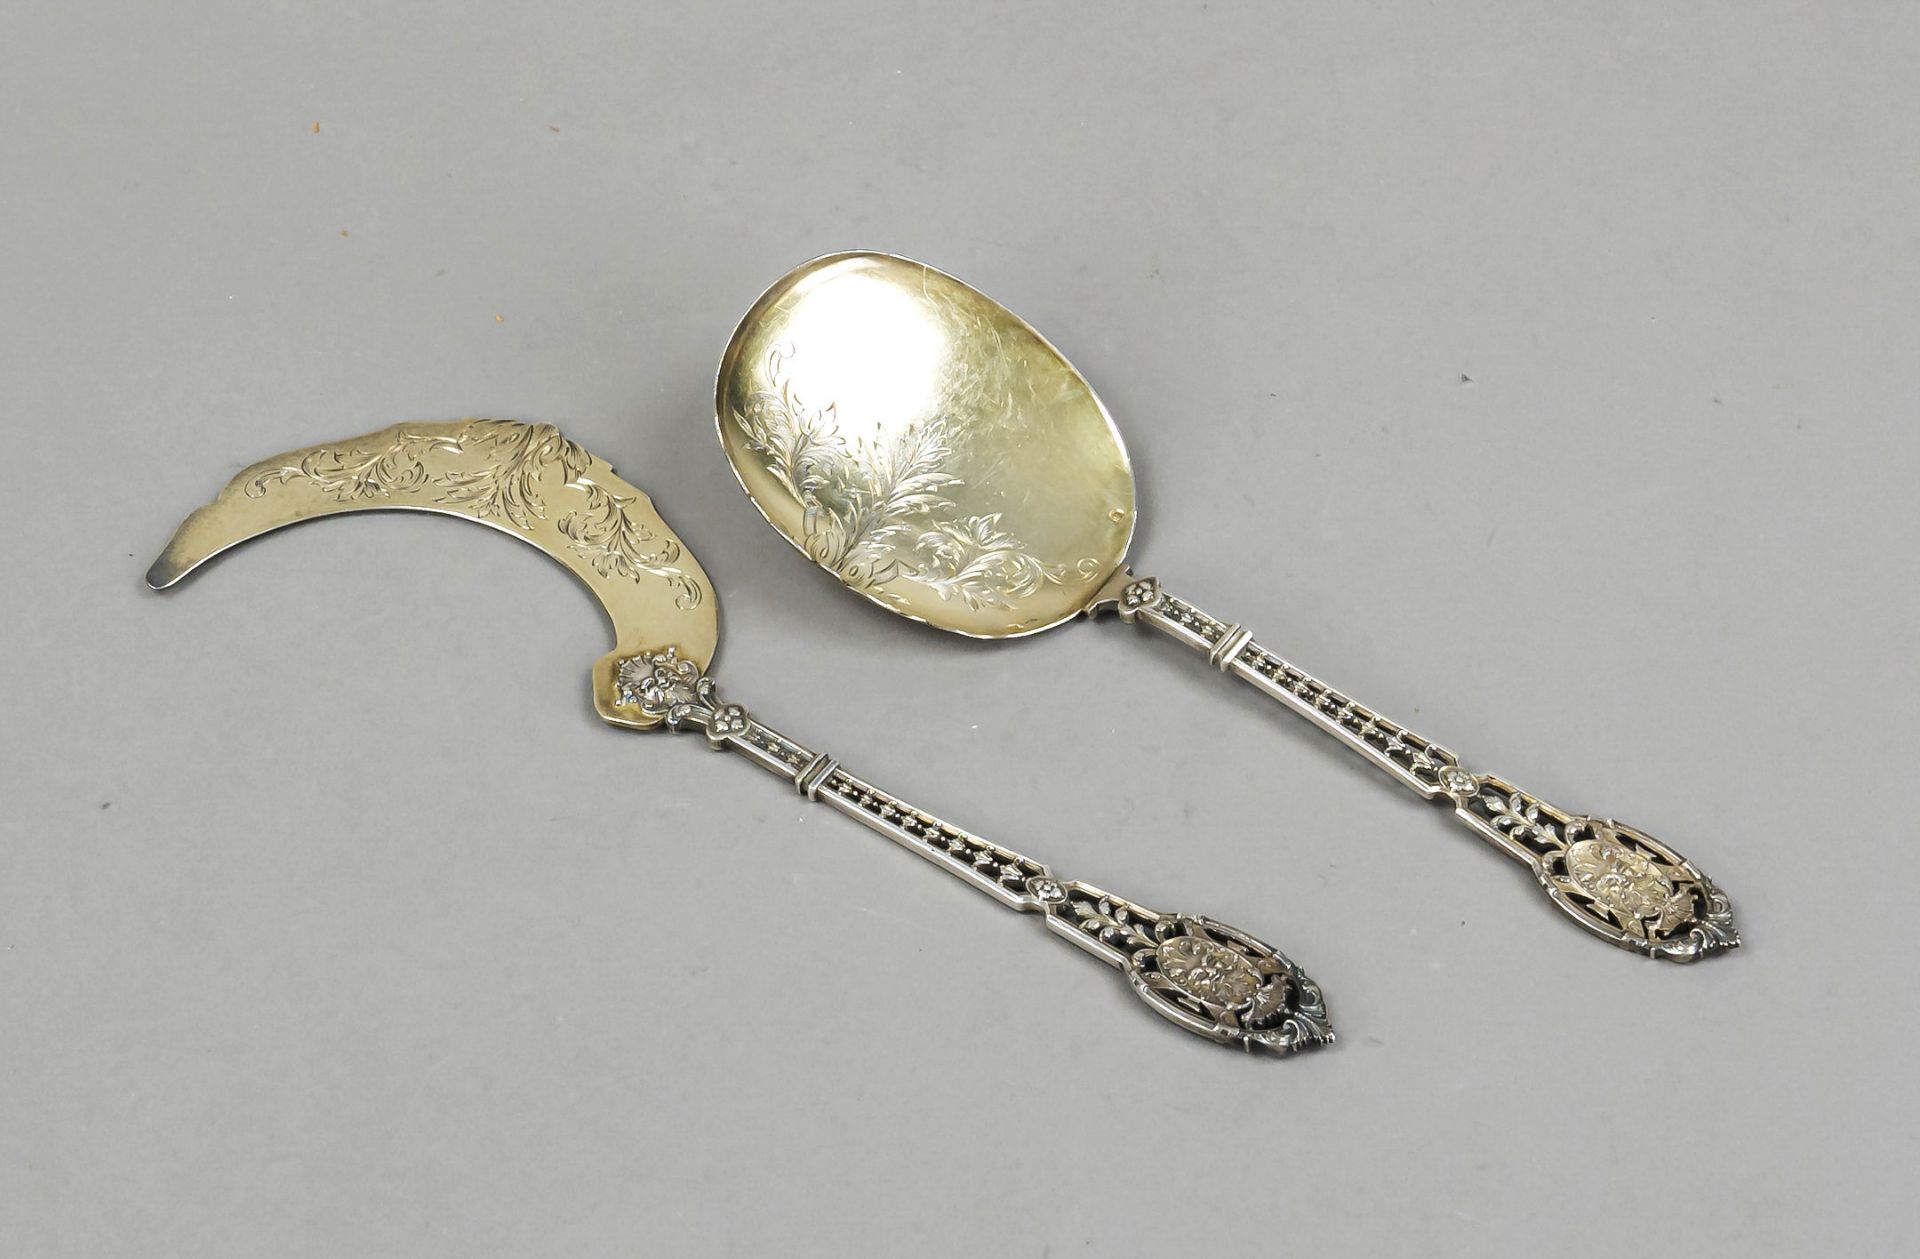 Two-piece ice cutlery set, France, c. 1900, maker's mark Emile Puiforcat, Paris, silver 950/000,